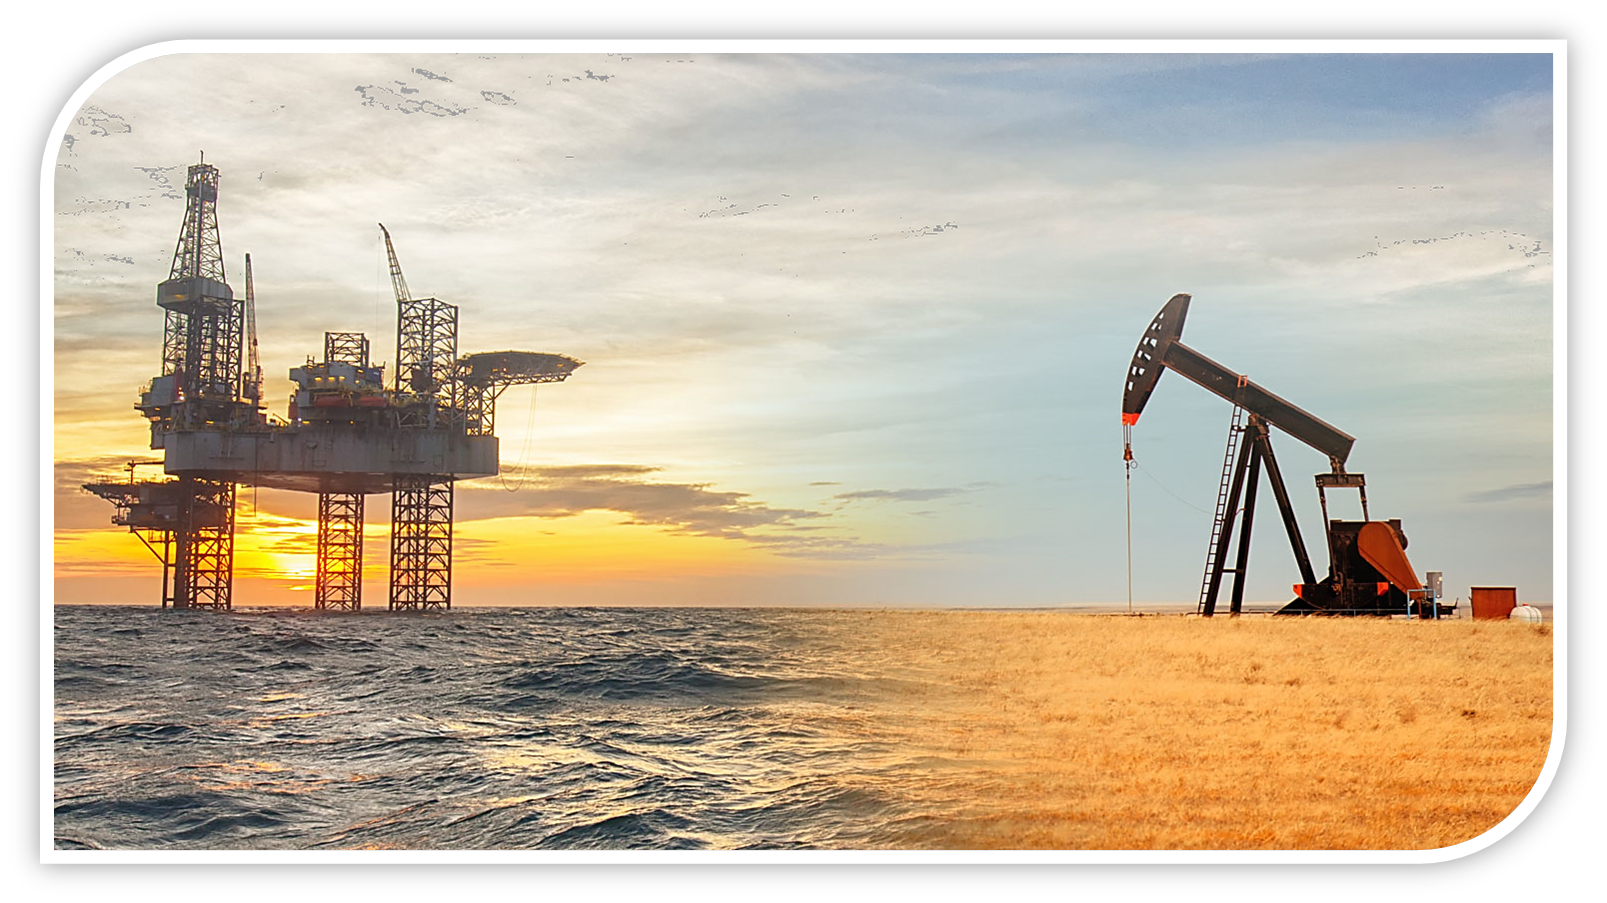 Нефть и газ главное богатство. Нефтедобывающая платформа «нефтяные камни». Нефтегазовый сектор Австралии. Нефтяная вышка. Нефтедобывающая промышленность.